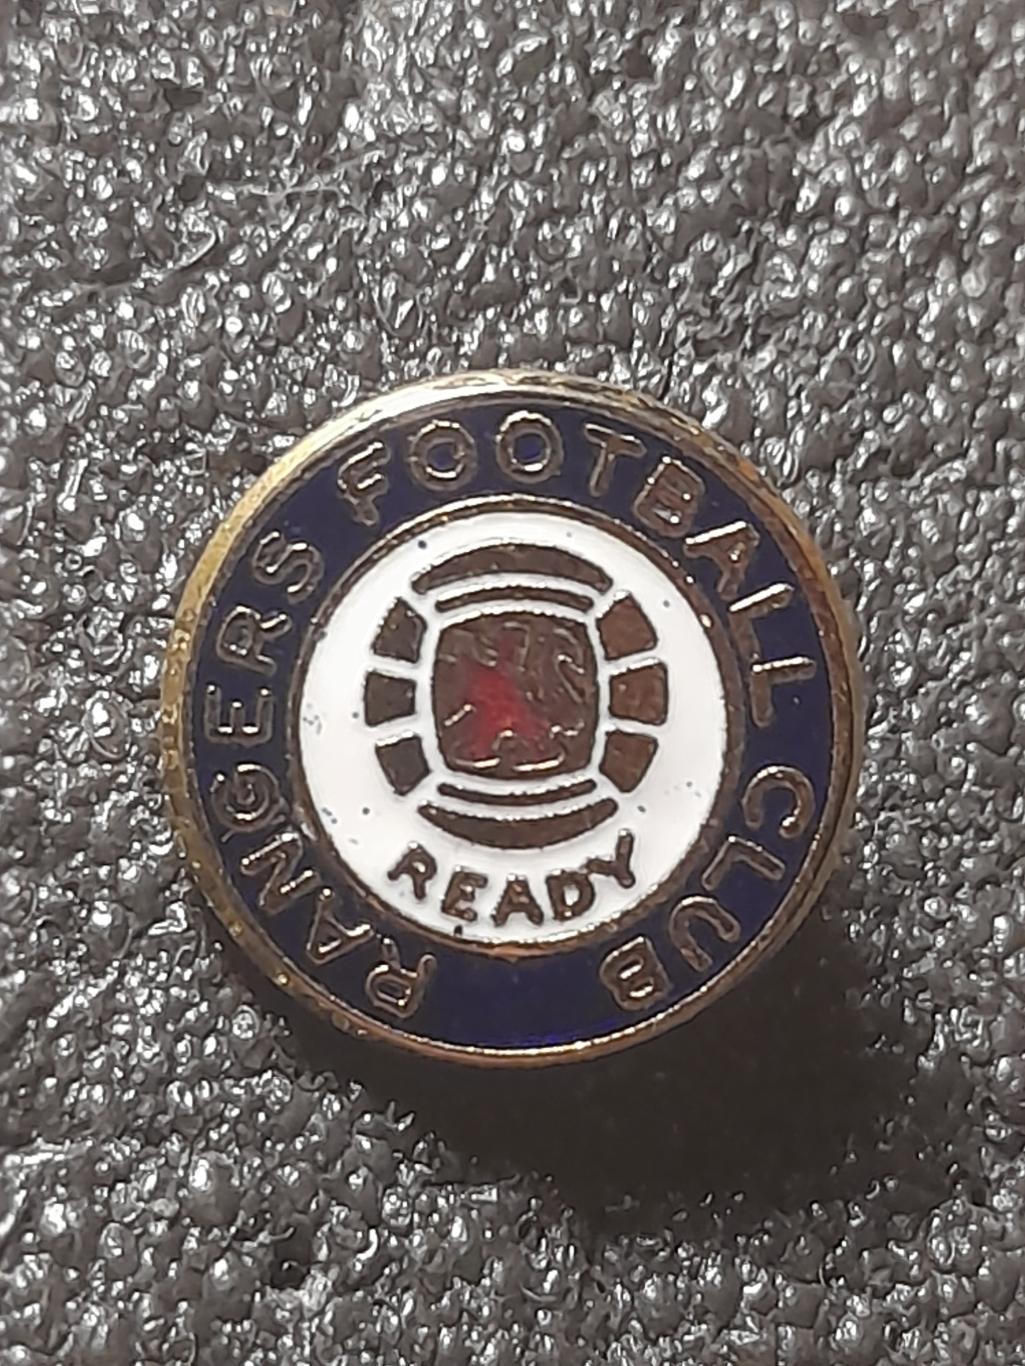 ФК Рейнджерс (Шотландія) / Glasgo Rangers FC (Scotland)(1)оригінал